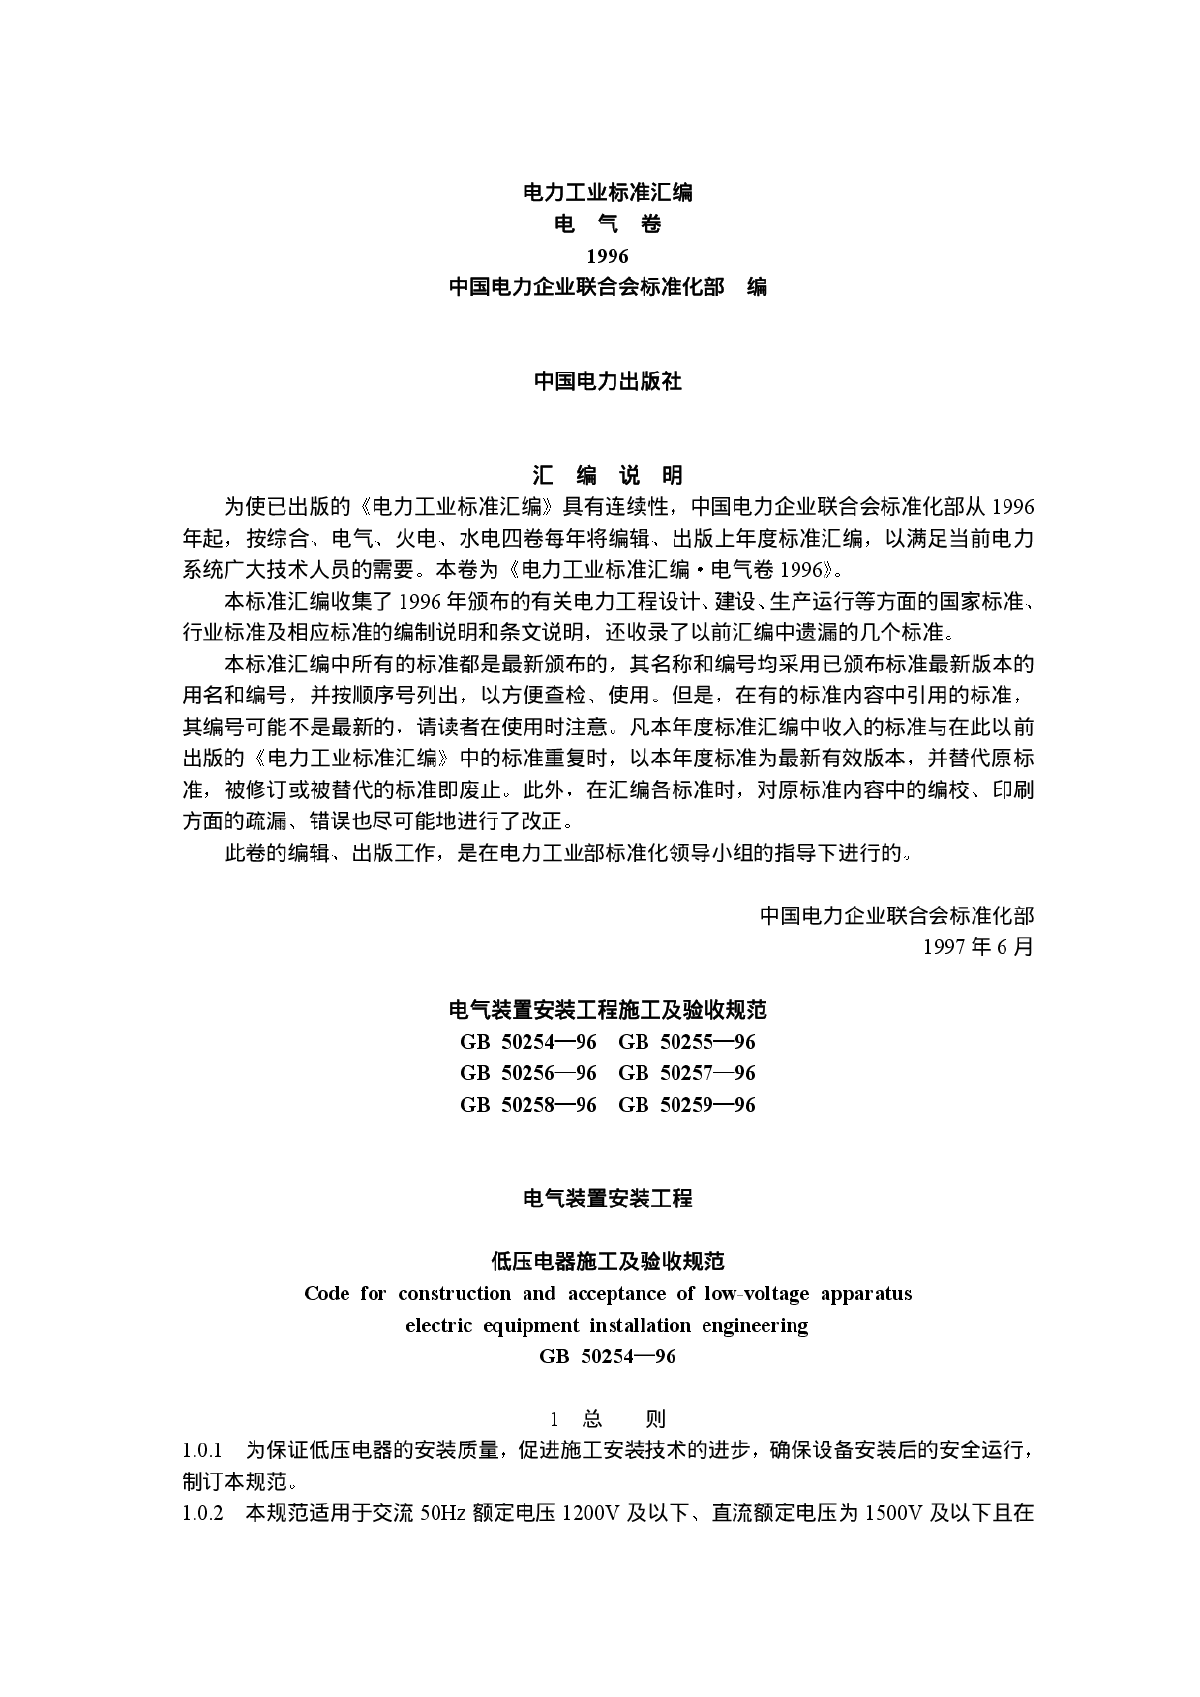 电力工业标准汇编(电气卷).pdf